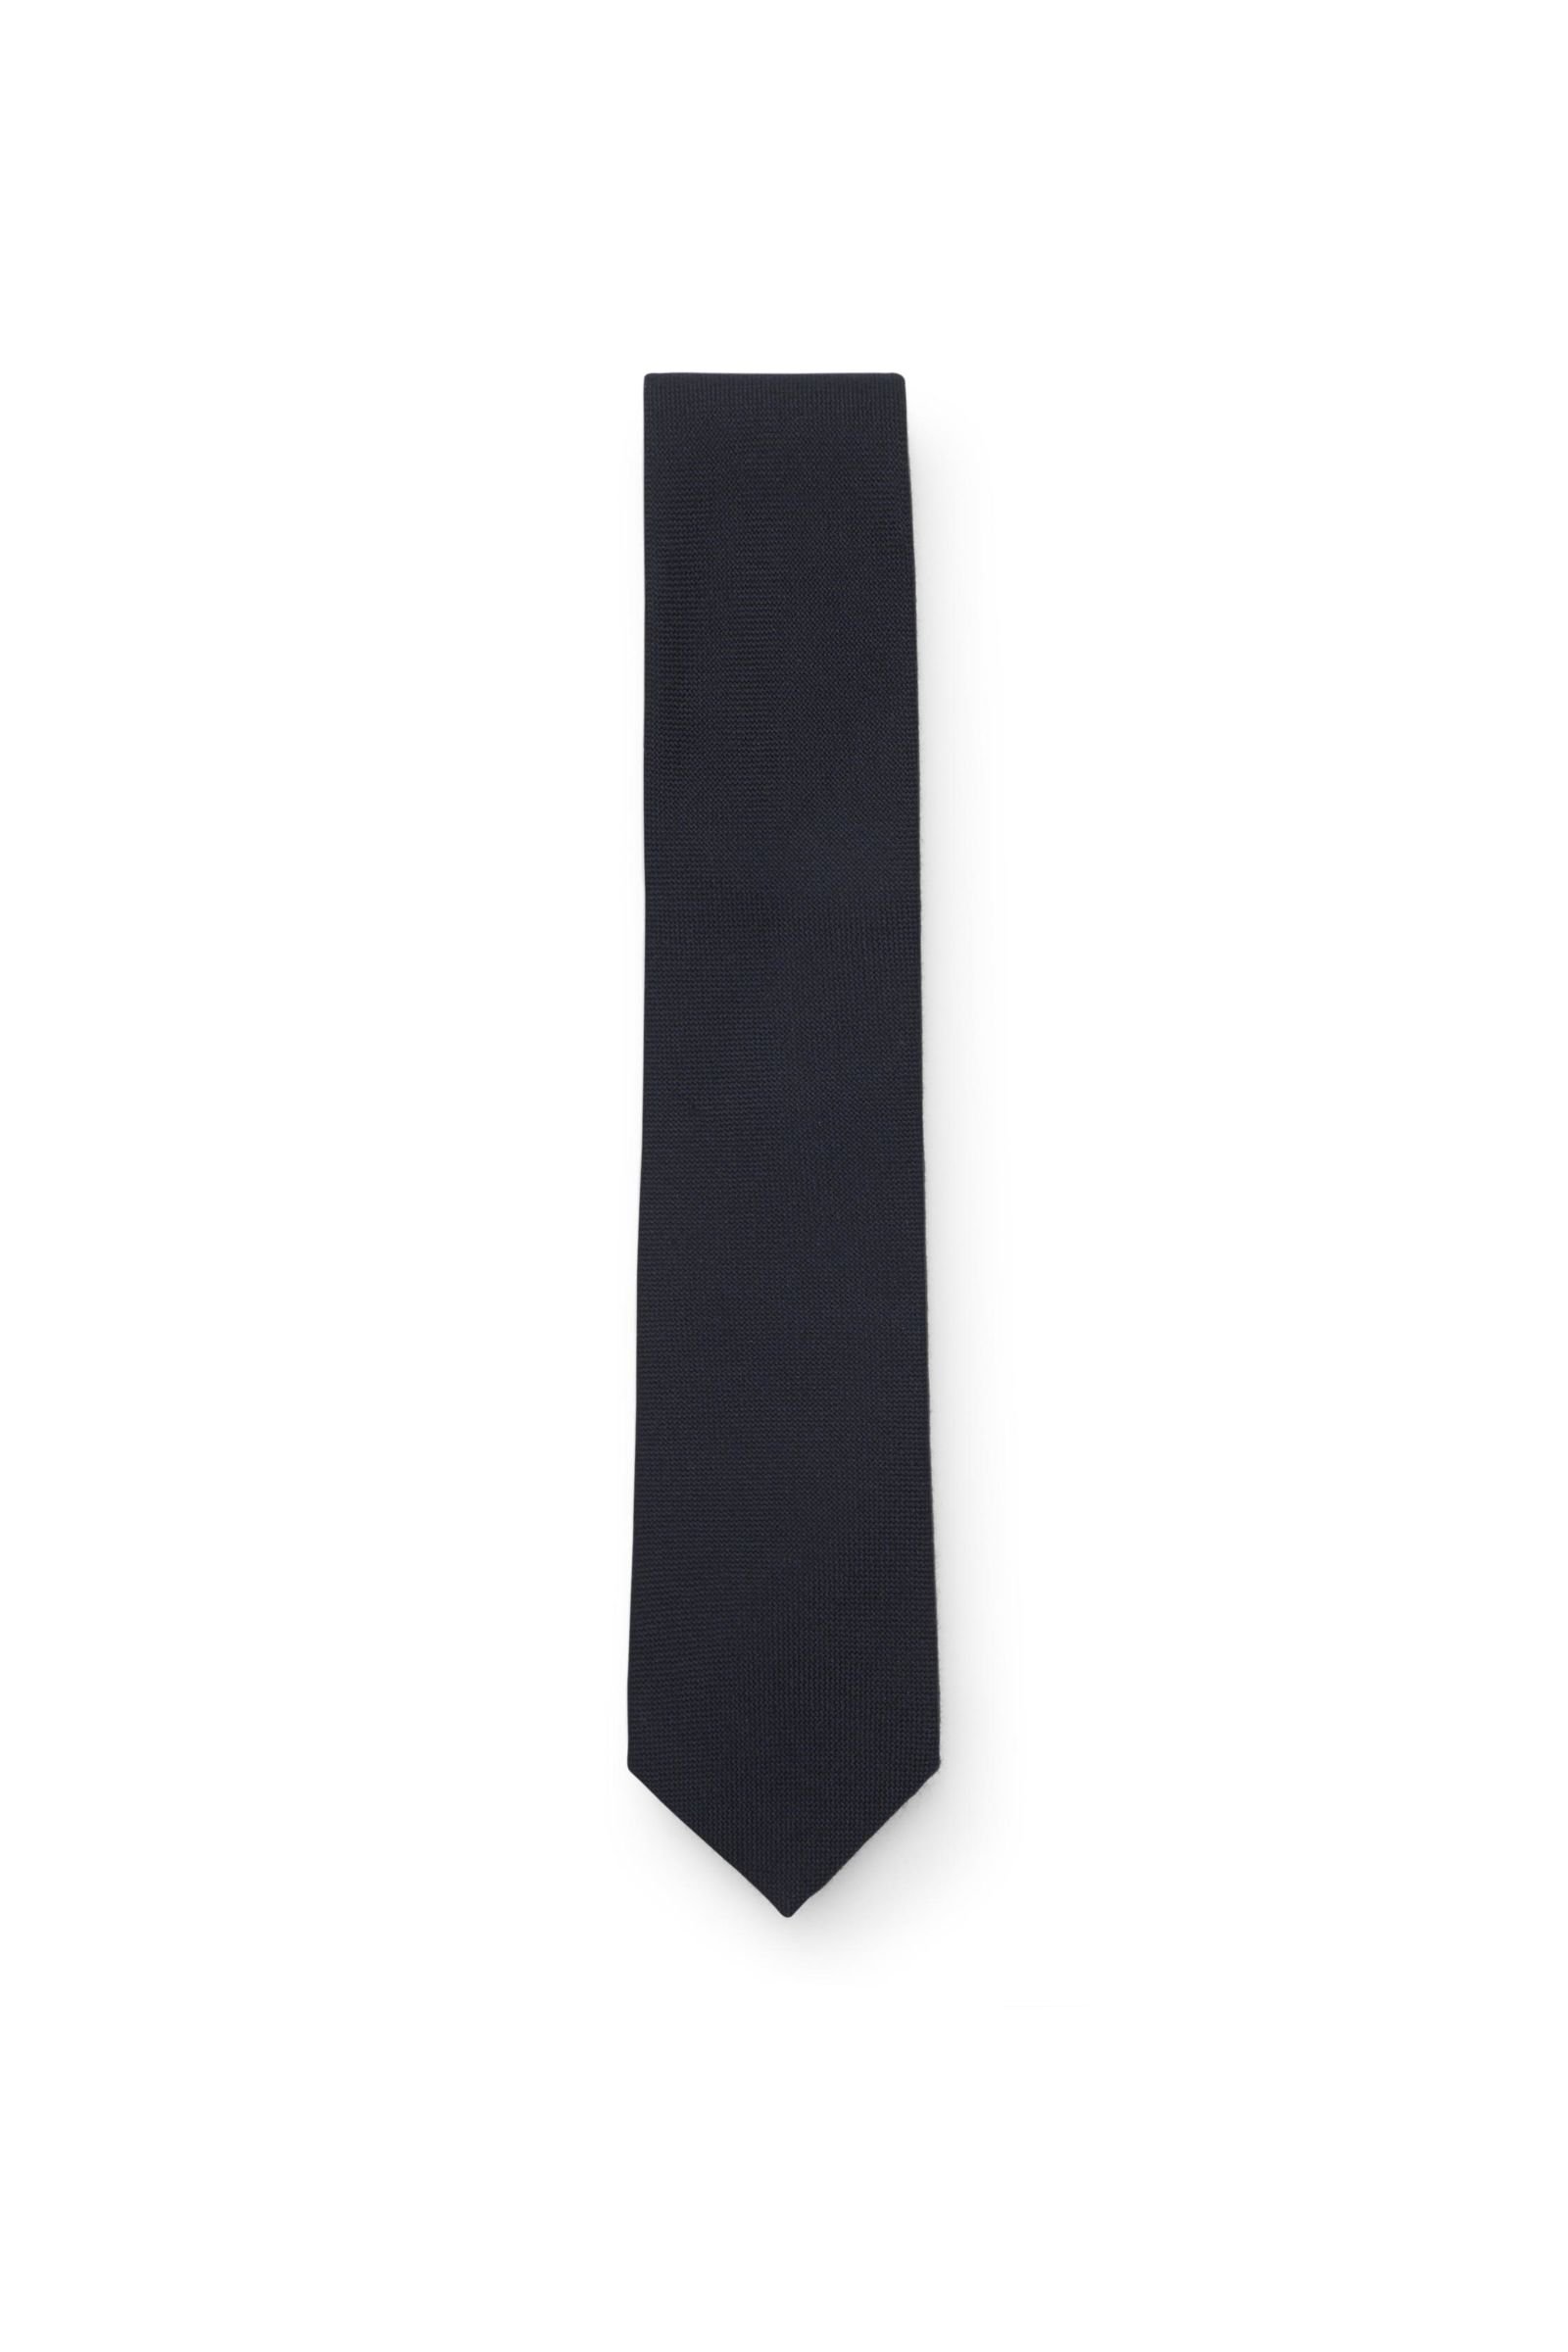 Cashmere tie dark navy